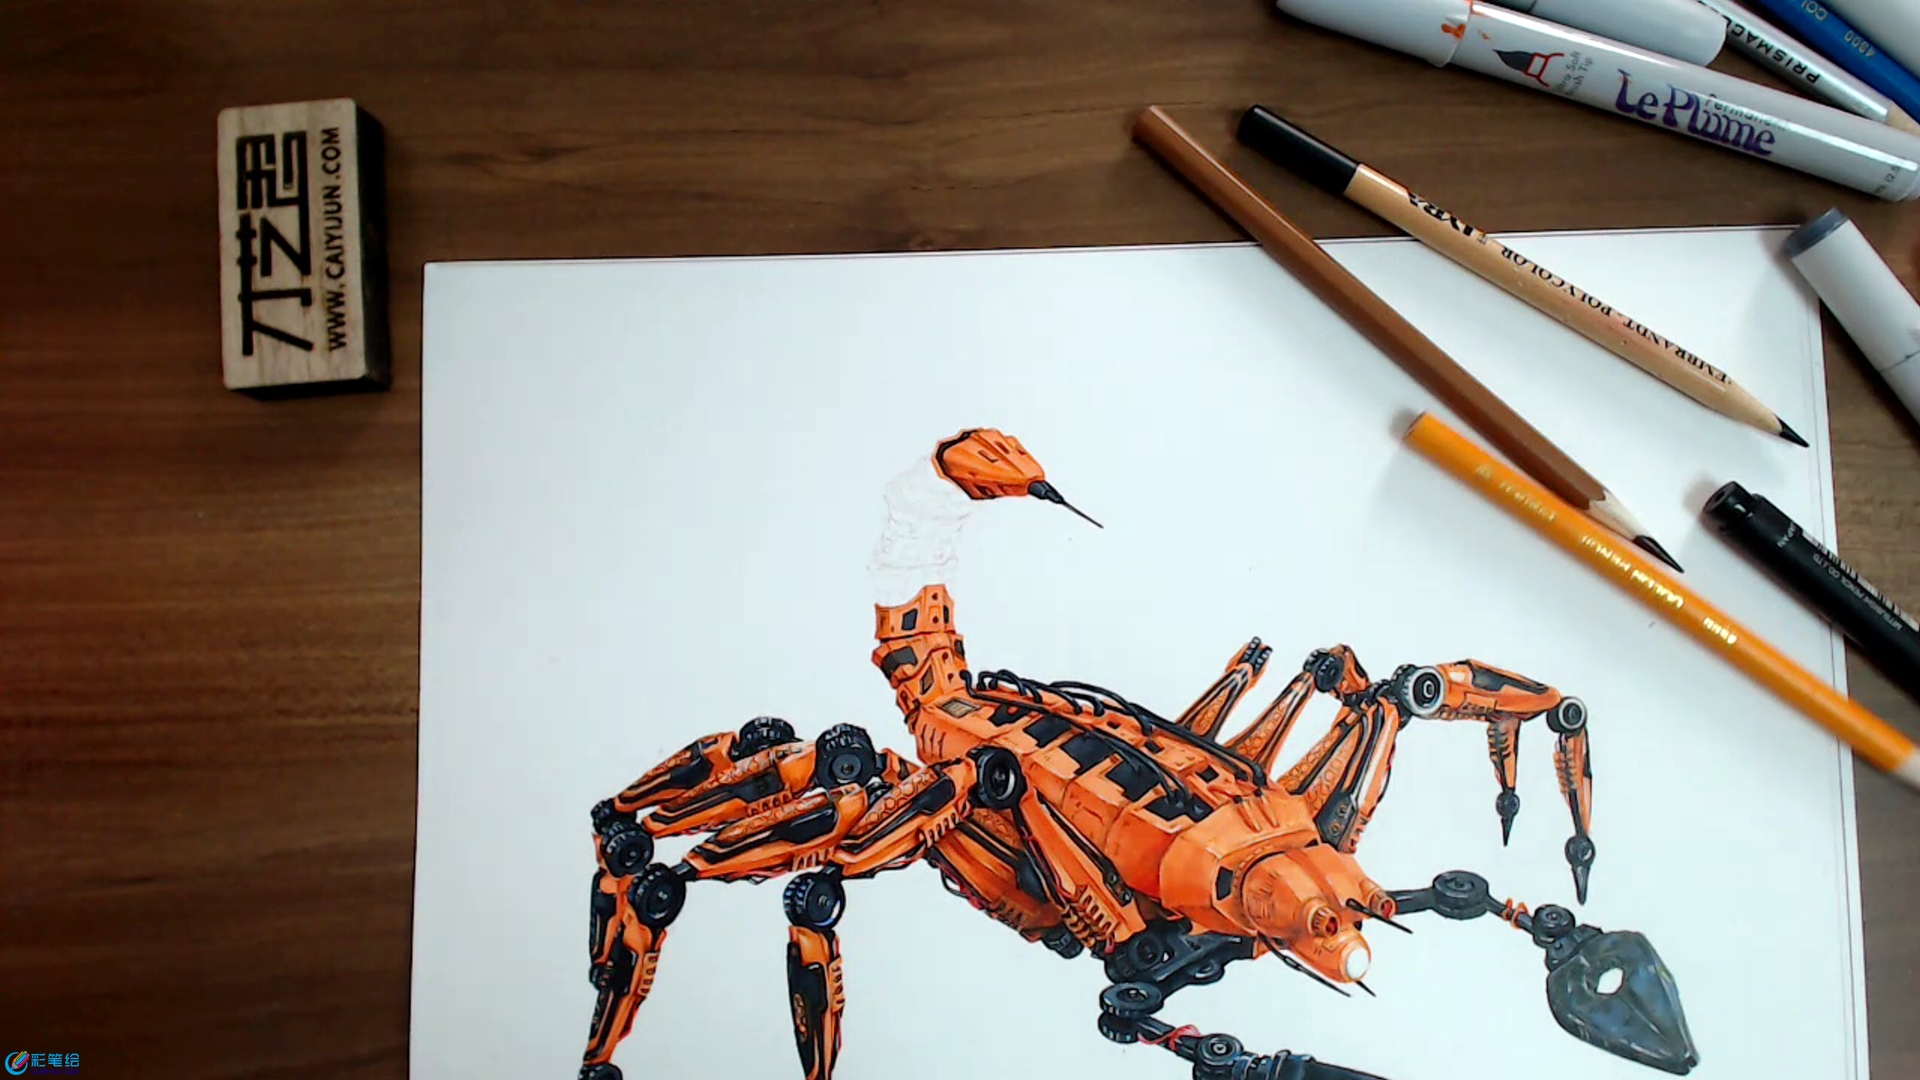 炫酷的彩铅马克笔手绘蝎子机械战士